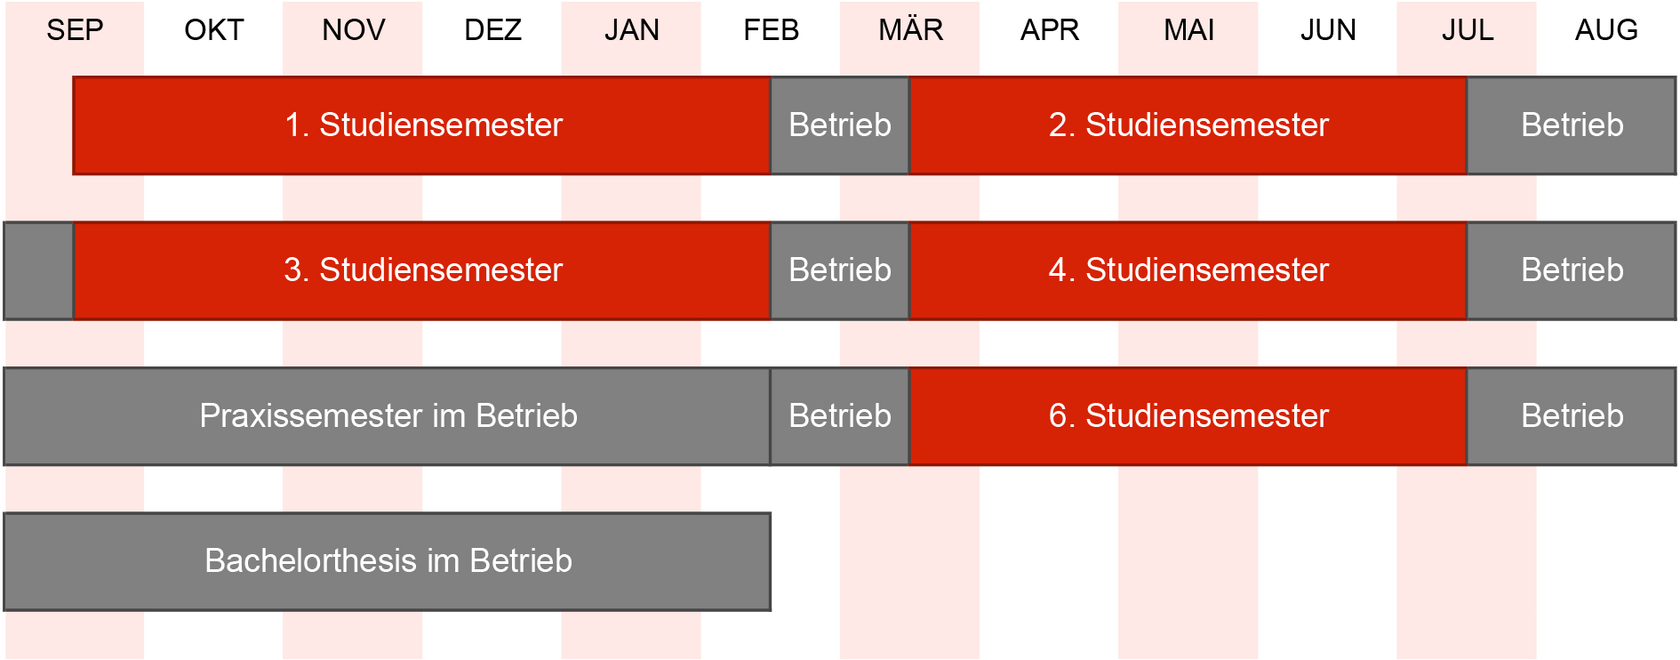 schematische Übersicht übe den Ablauf des StudiumPLUS Praxis in Form eine Jahresablaufs auf Kalenderbasis